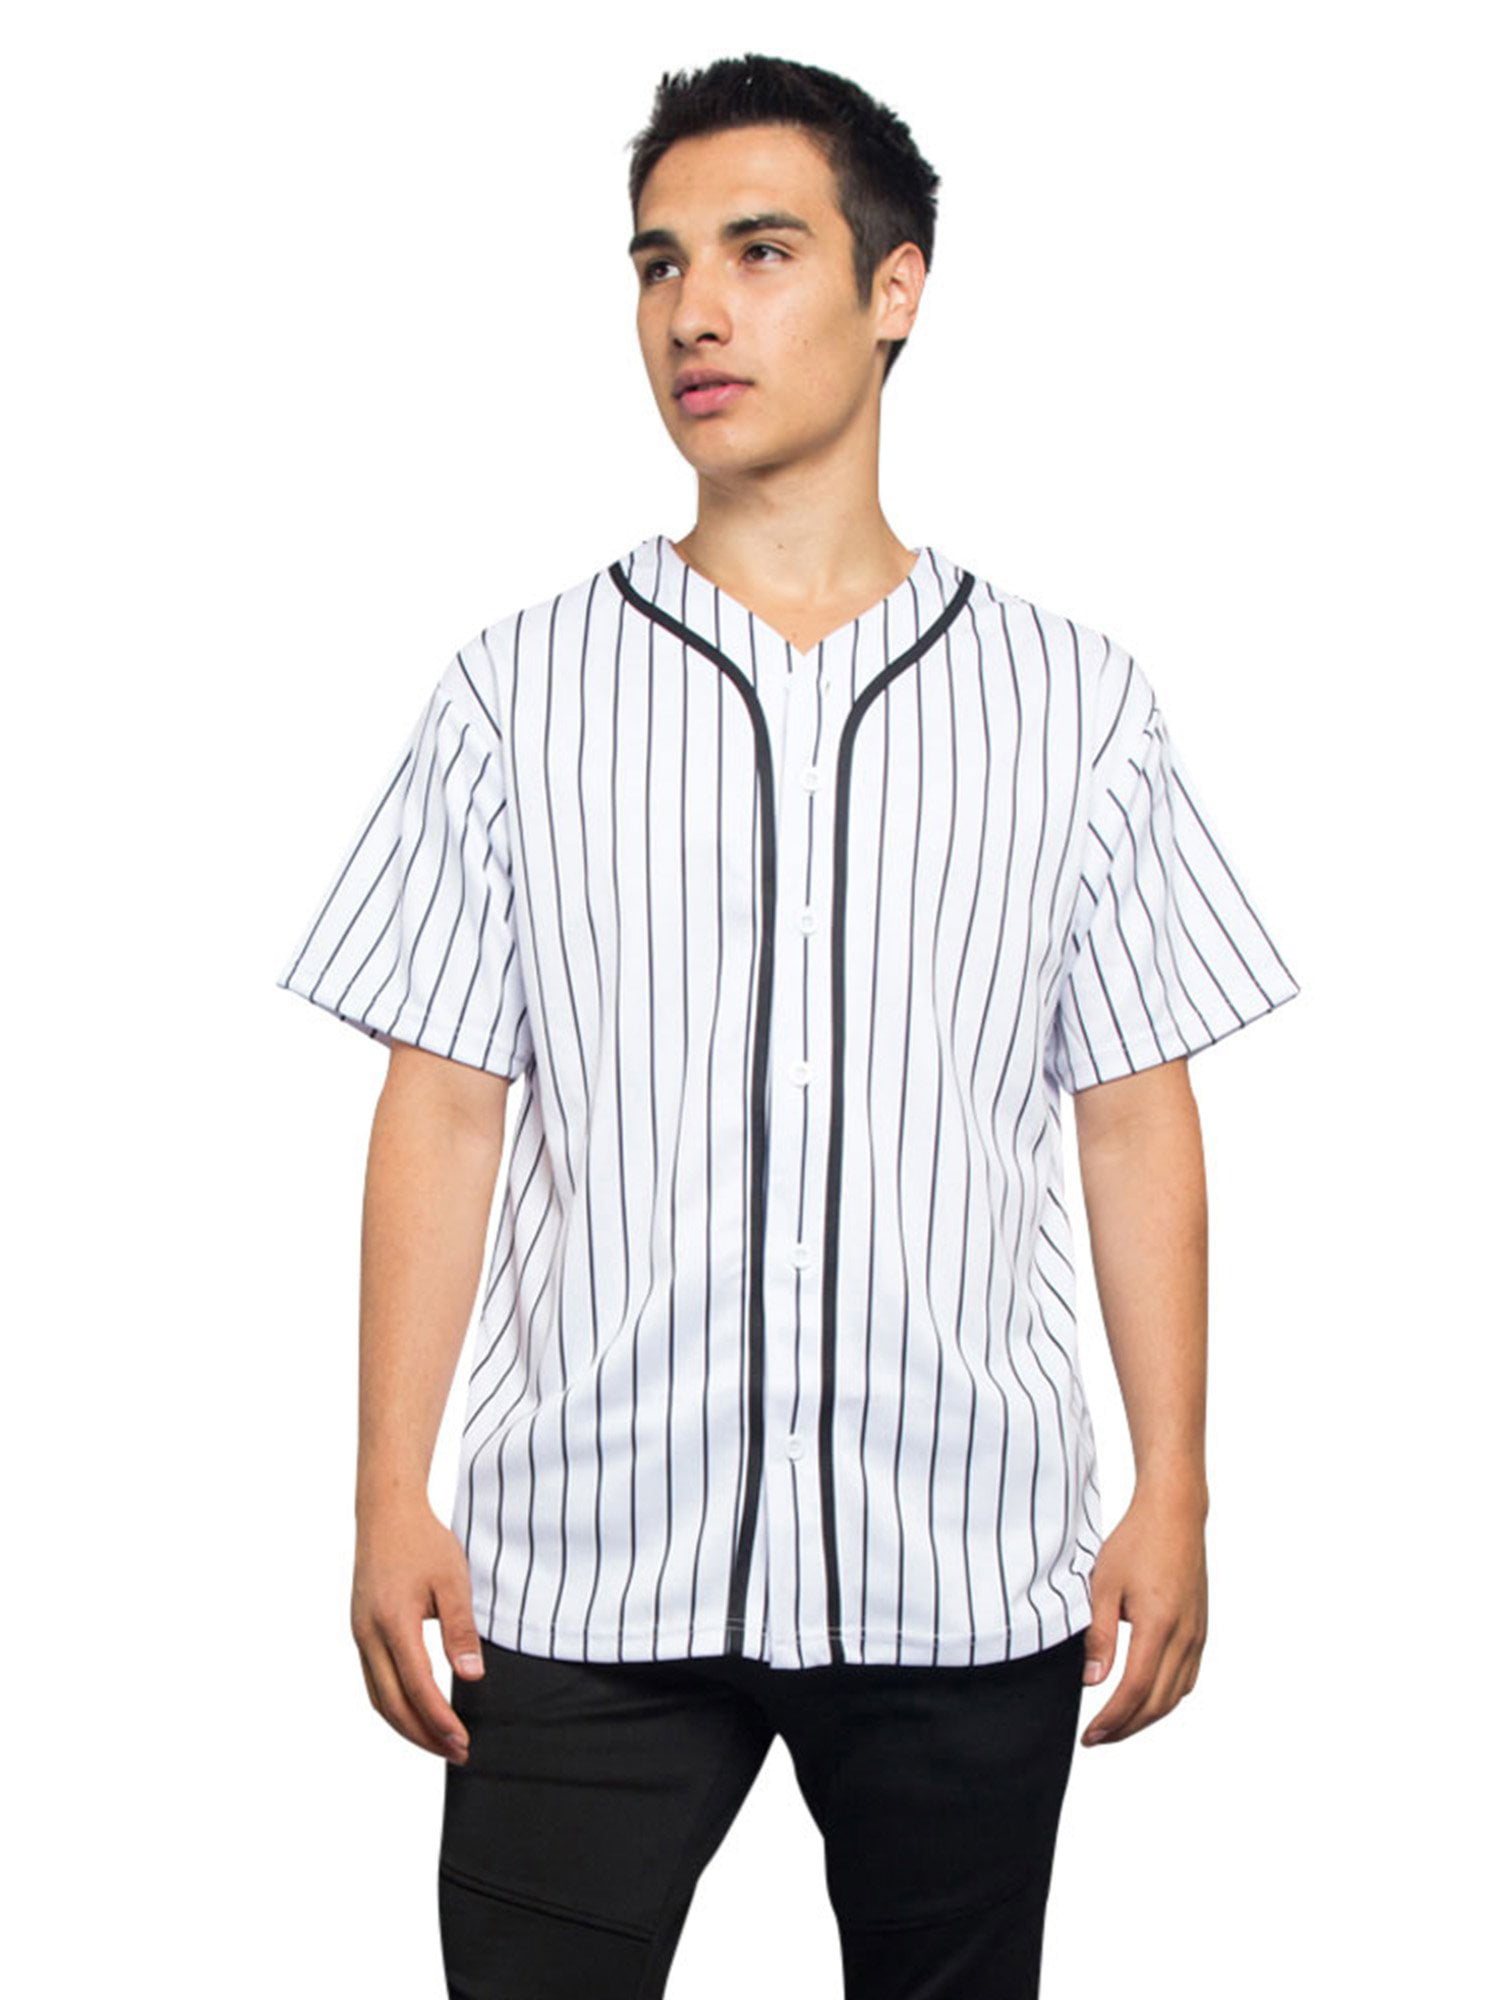 striped baseball jersey